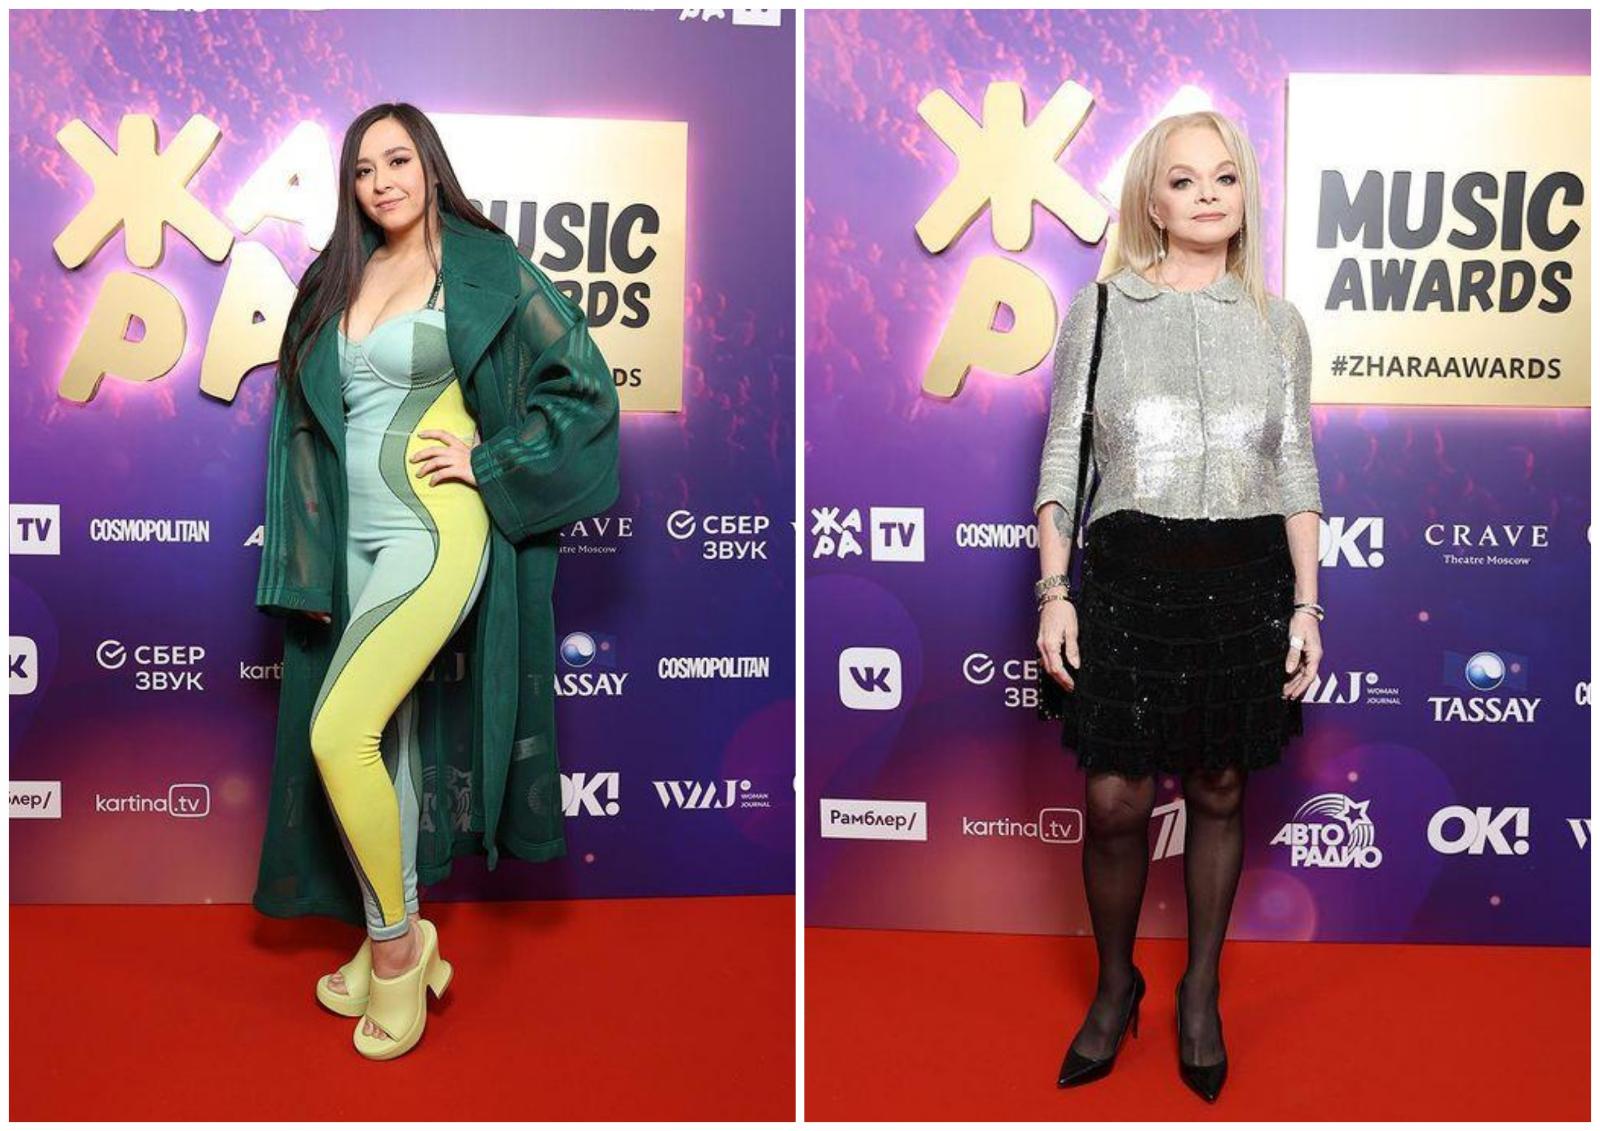 Манижа в обтягивающем комбинезоне, стройная Лариса Долина в мини: 7 ярких звездных образов на премии ЖАРА Music Awards 2021